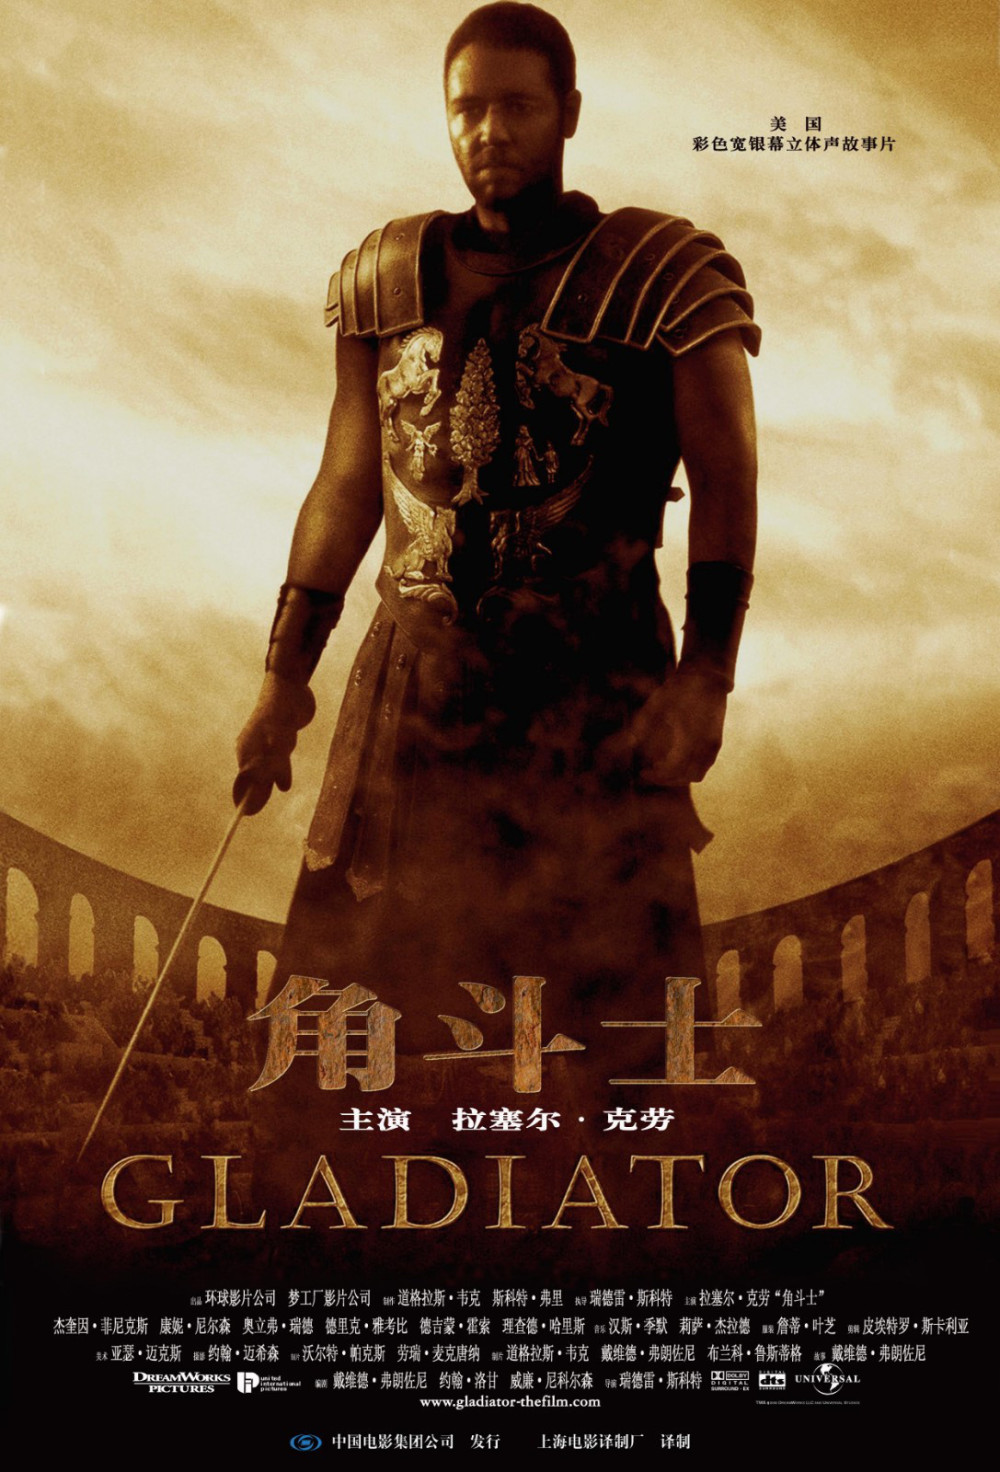 电影角斗士是古罗马哪个历史时期,求具体的历史背景